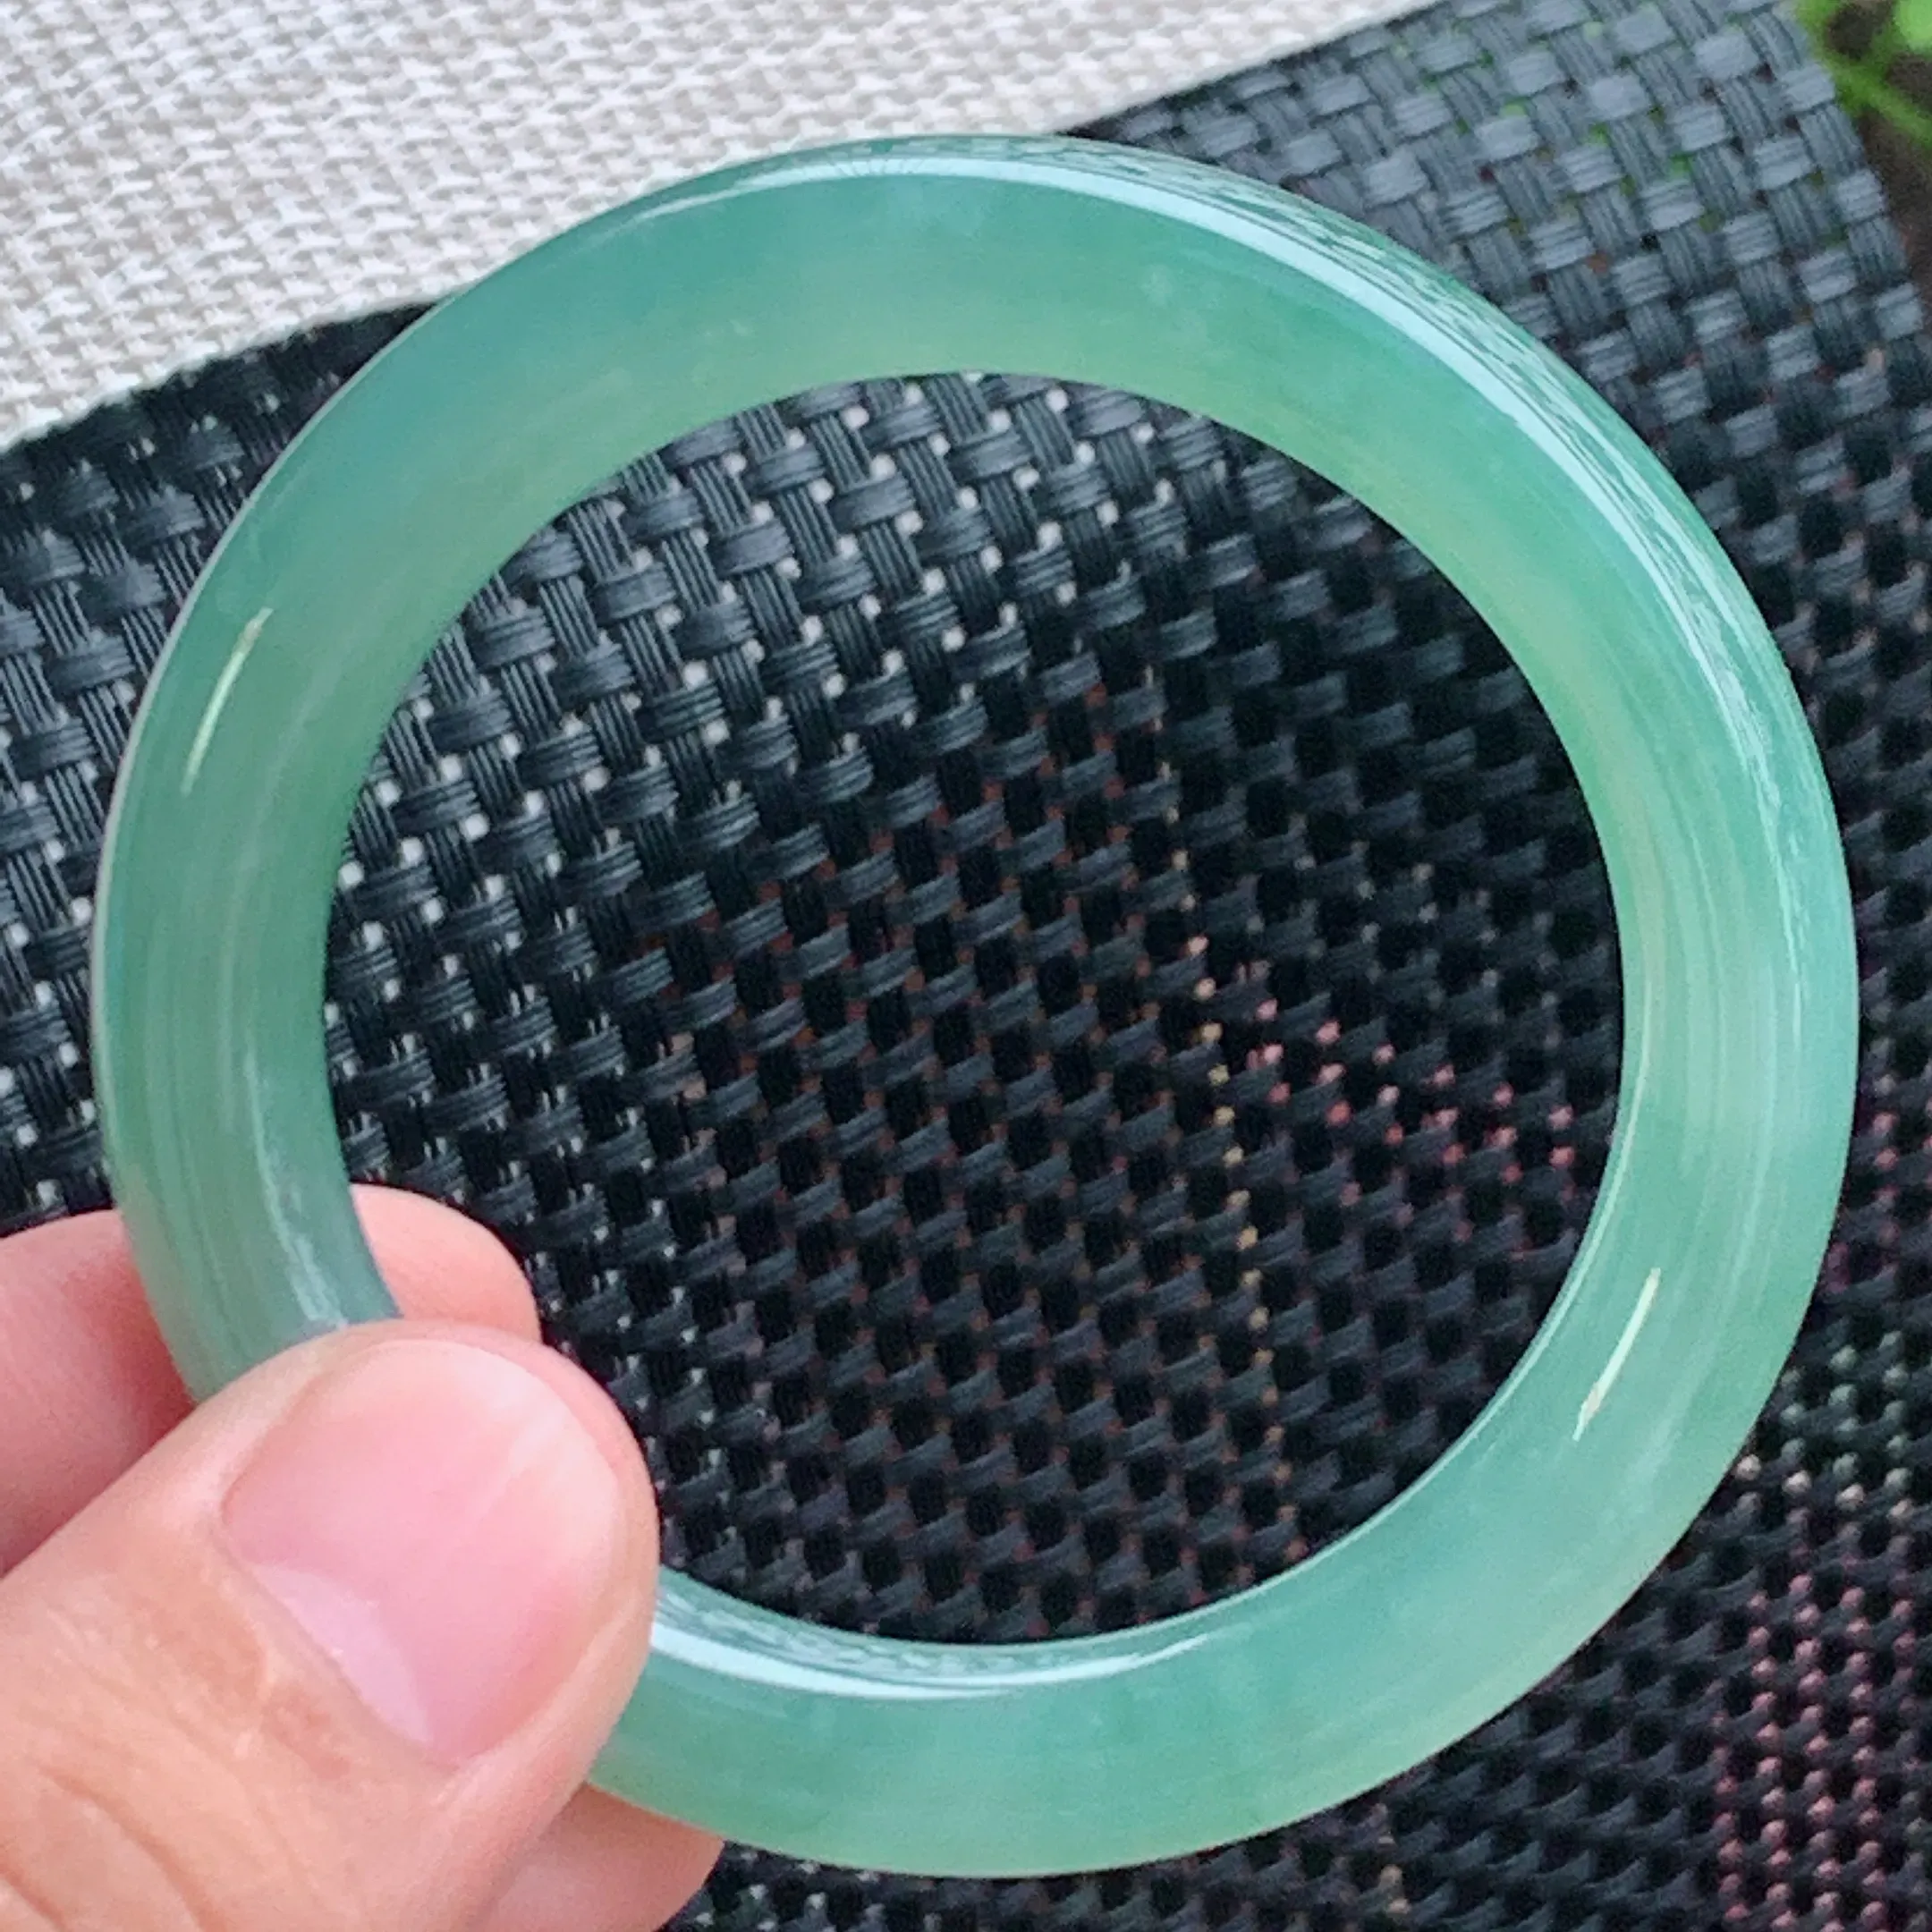 圈口：54.3mm、A货翡翠冰透满绿圆条手镯、玉质通透莹润、色泽均匀，条形圆润饱满，水凝水润，